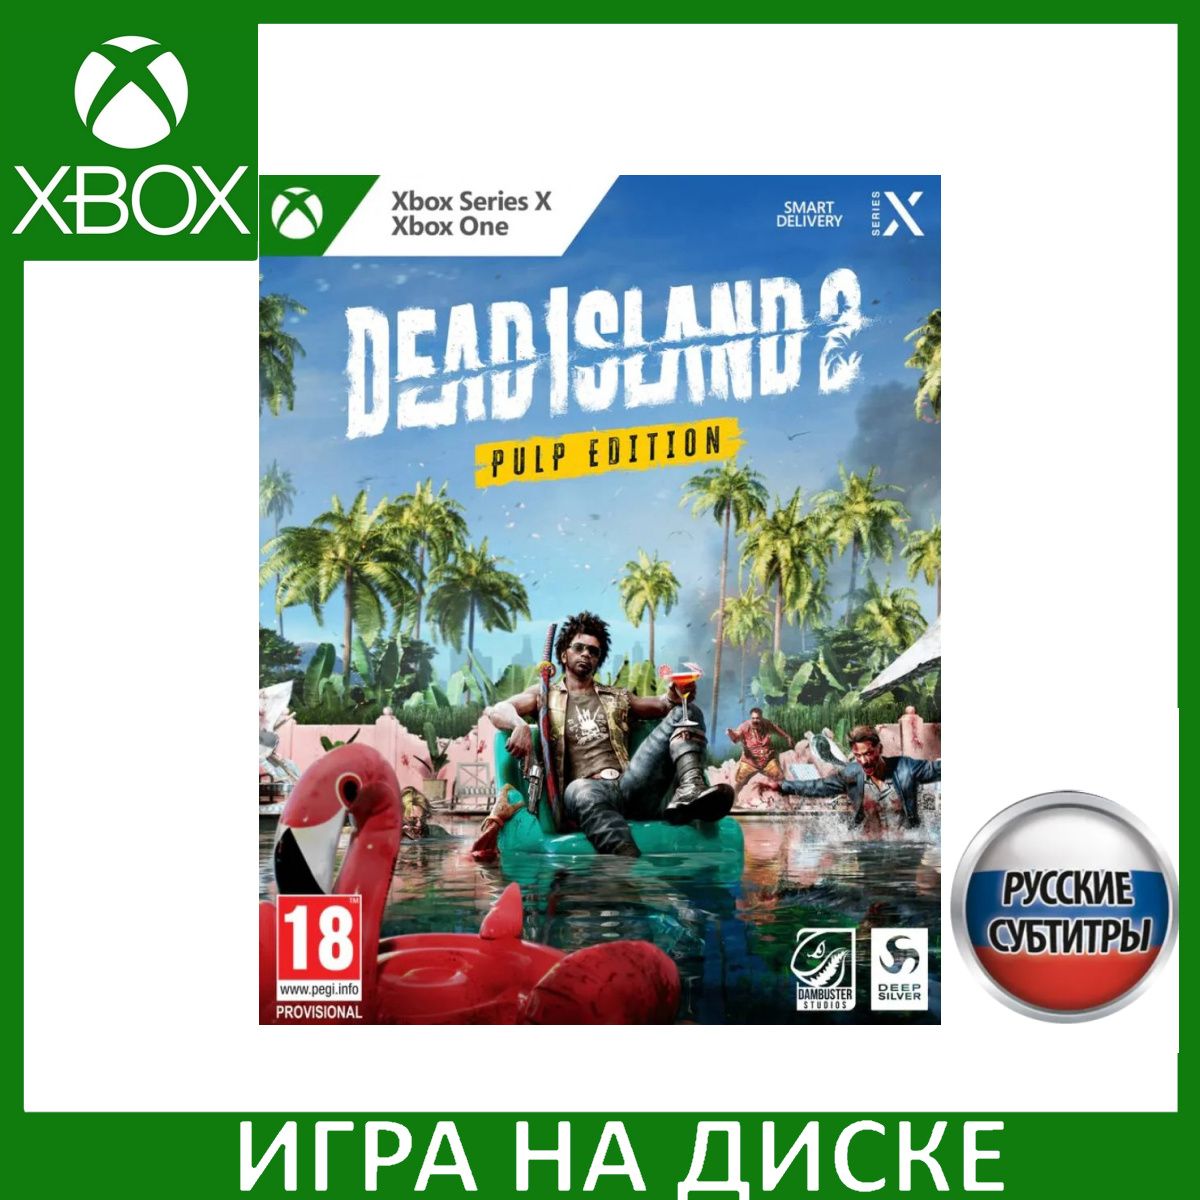 Offizielle Seite Игра Dead Island 2 Pulp Xbox (1331079050) Series, Русские (Xbox One, доставкой субтитры) цене купить с в OZON интернет-магазине Edition по низкой